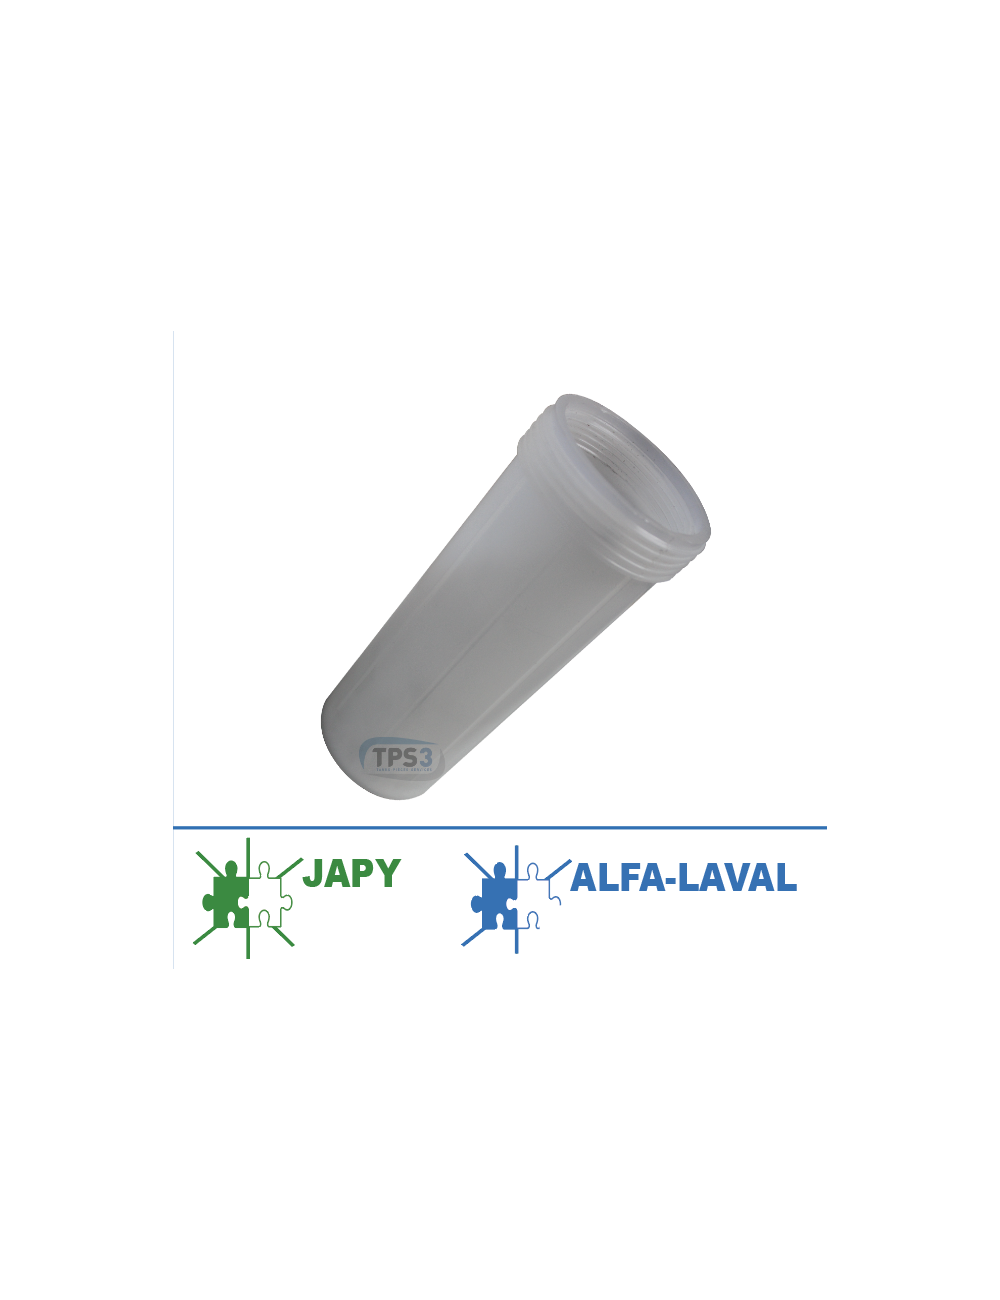 Bol à produit lessiviel 2 en 1 Alfa-Laval & Japy